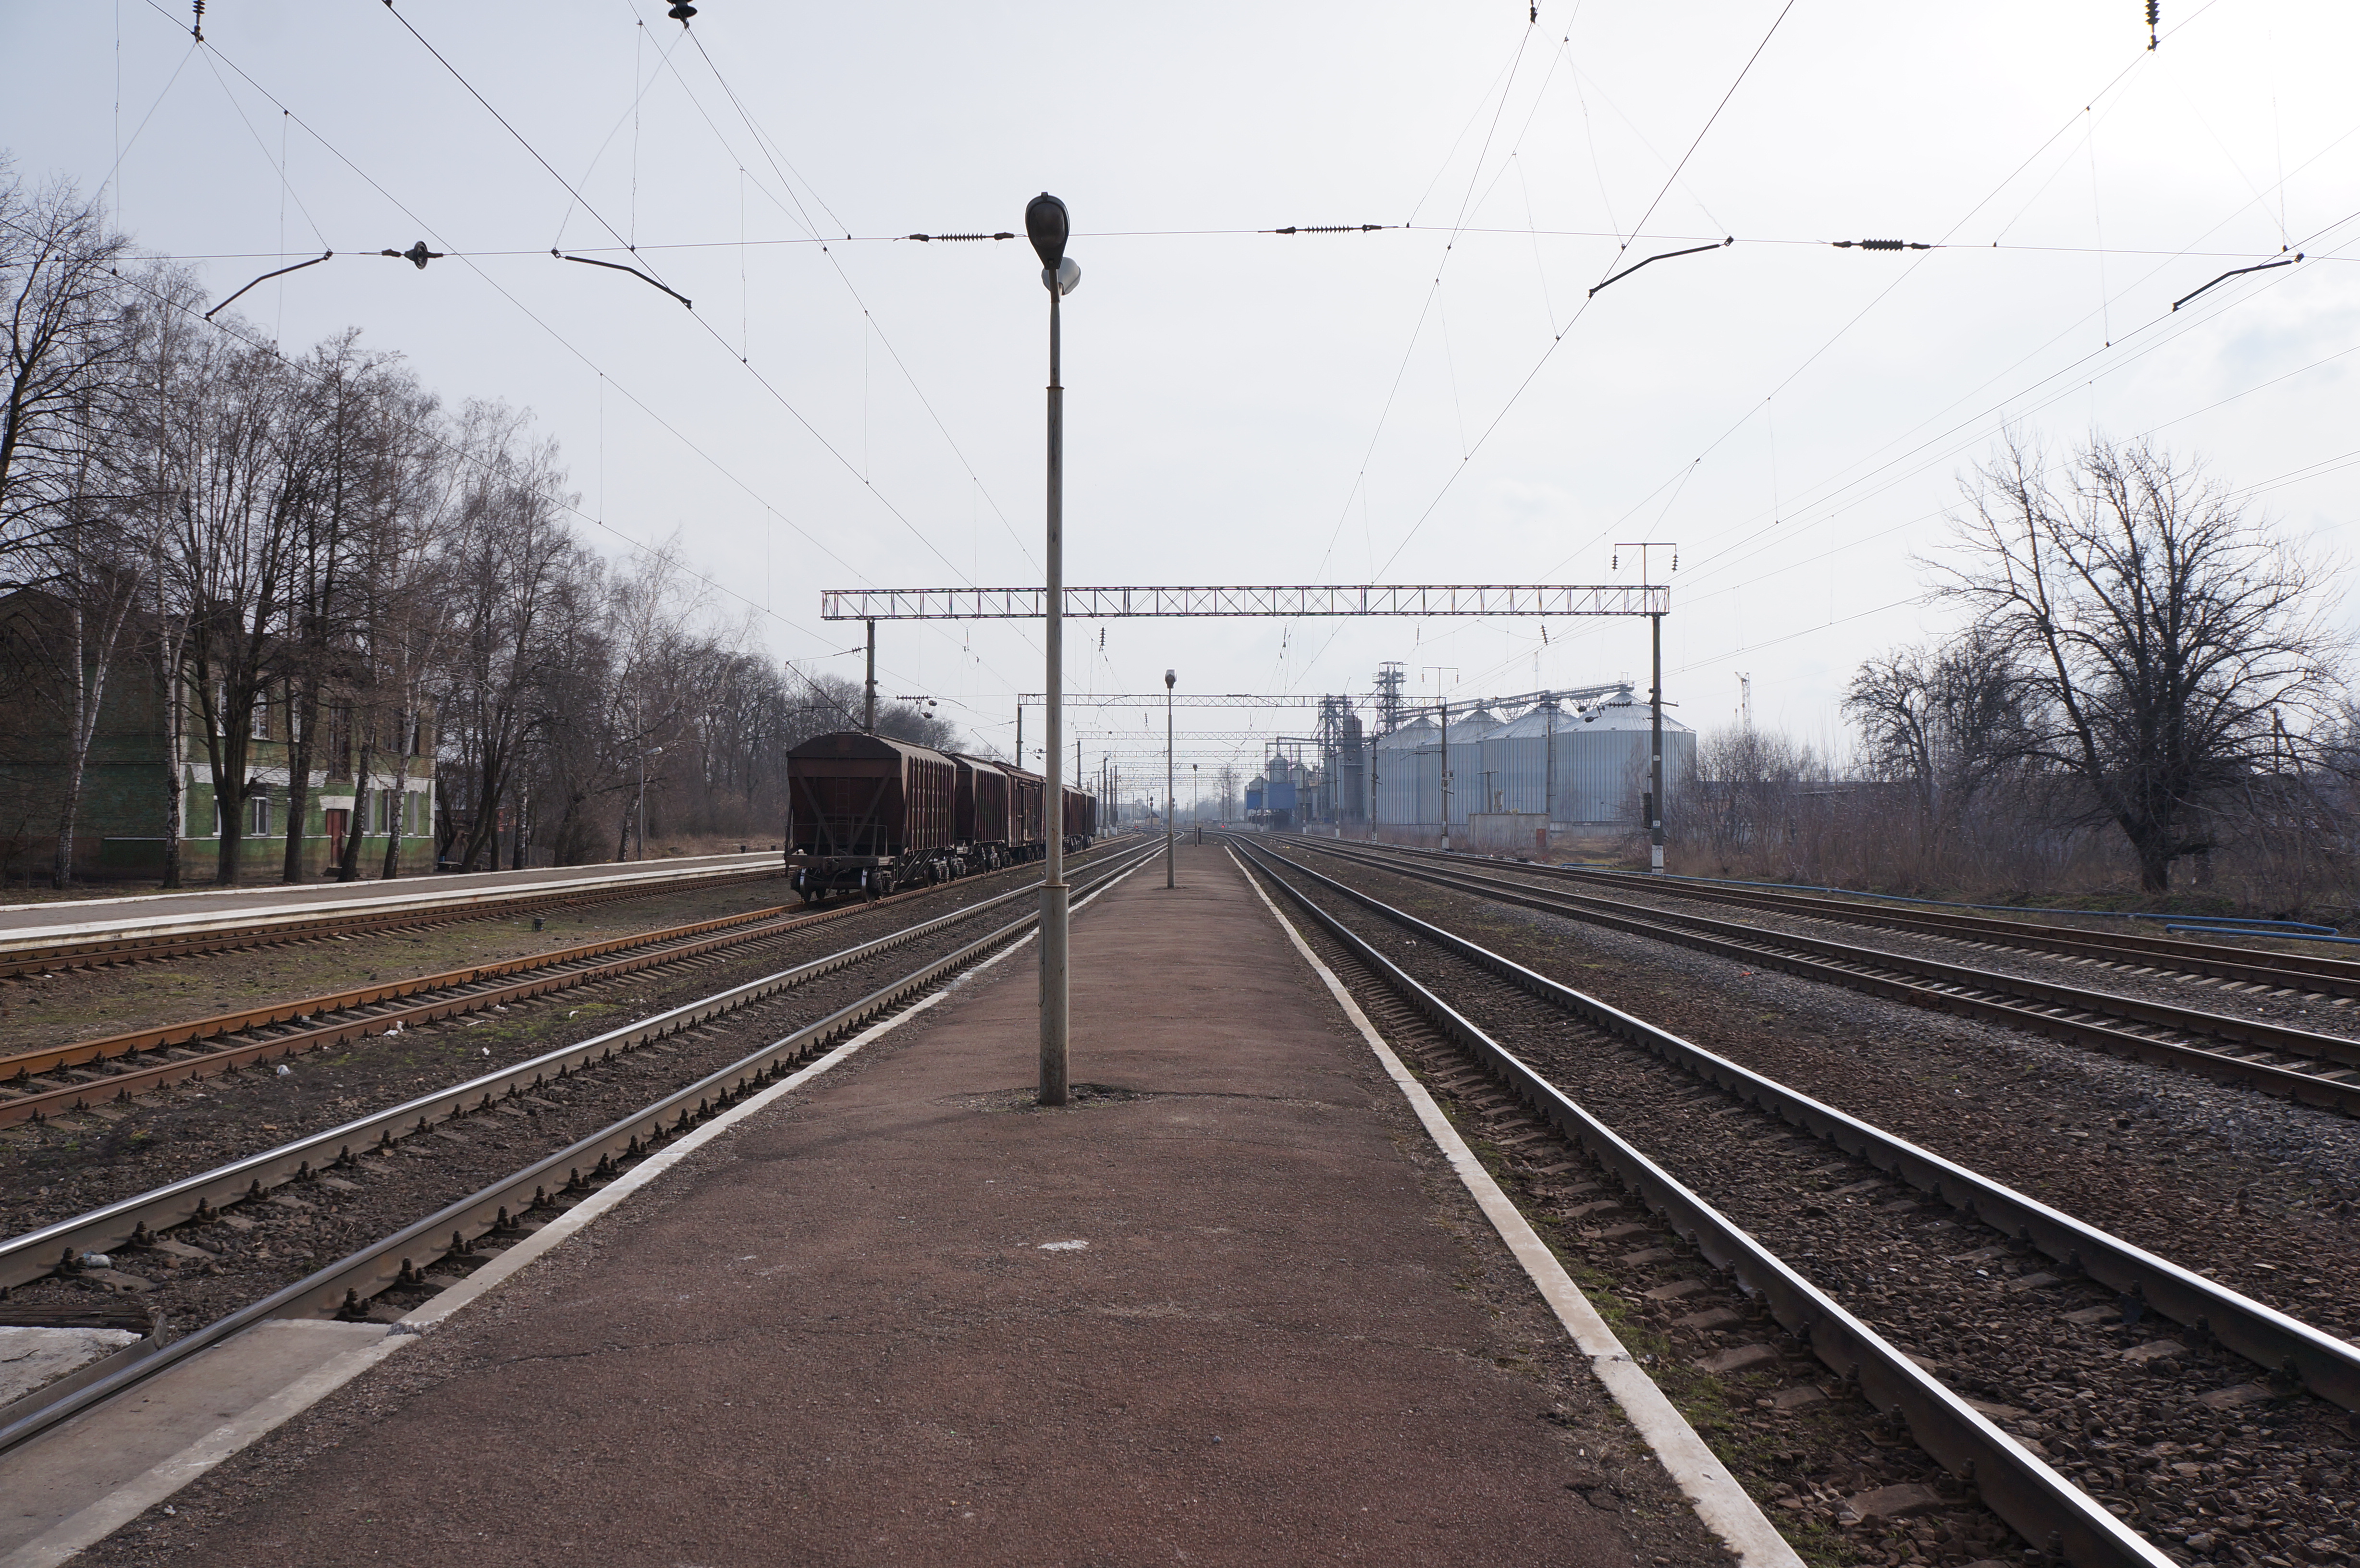 Села зерново. Станция Зерново. Станция Конотоп. Зерново Украина. Пограничная станция Конотоп Украины Железнодорожная.